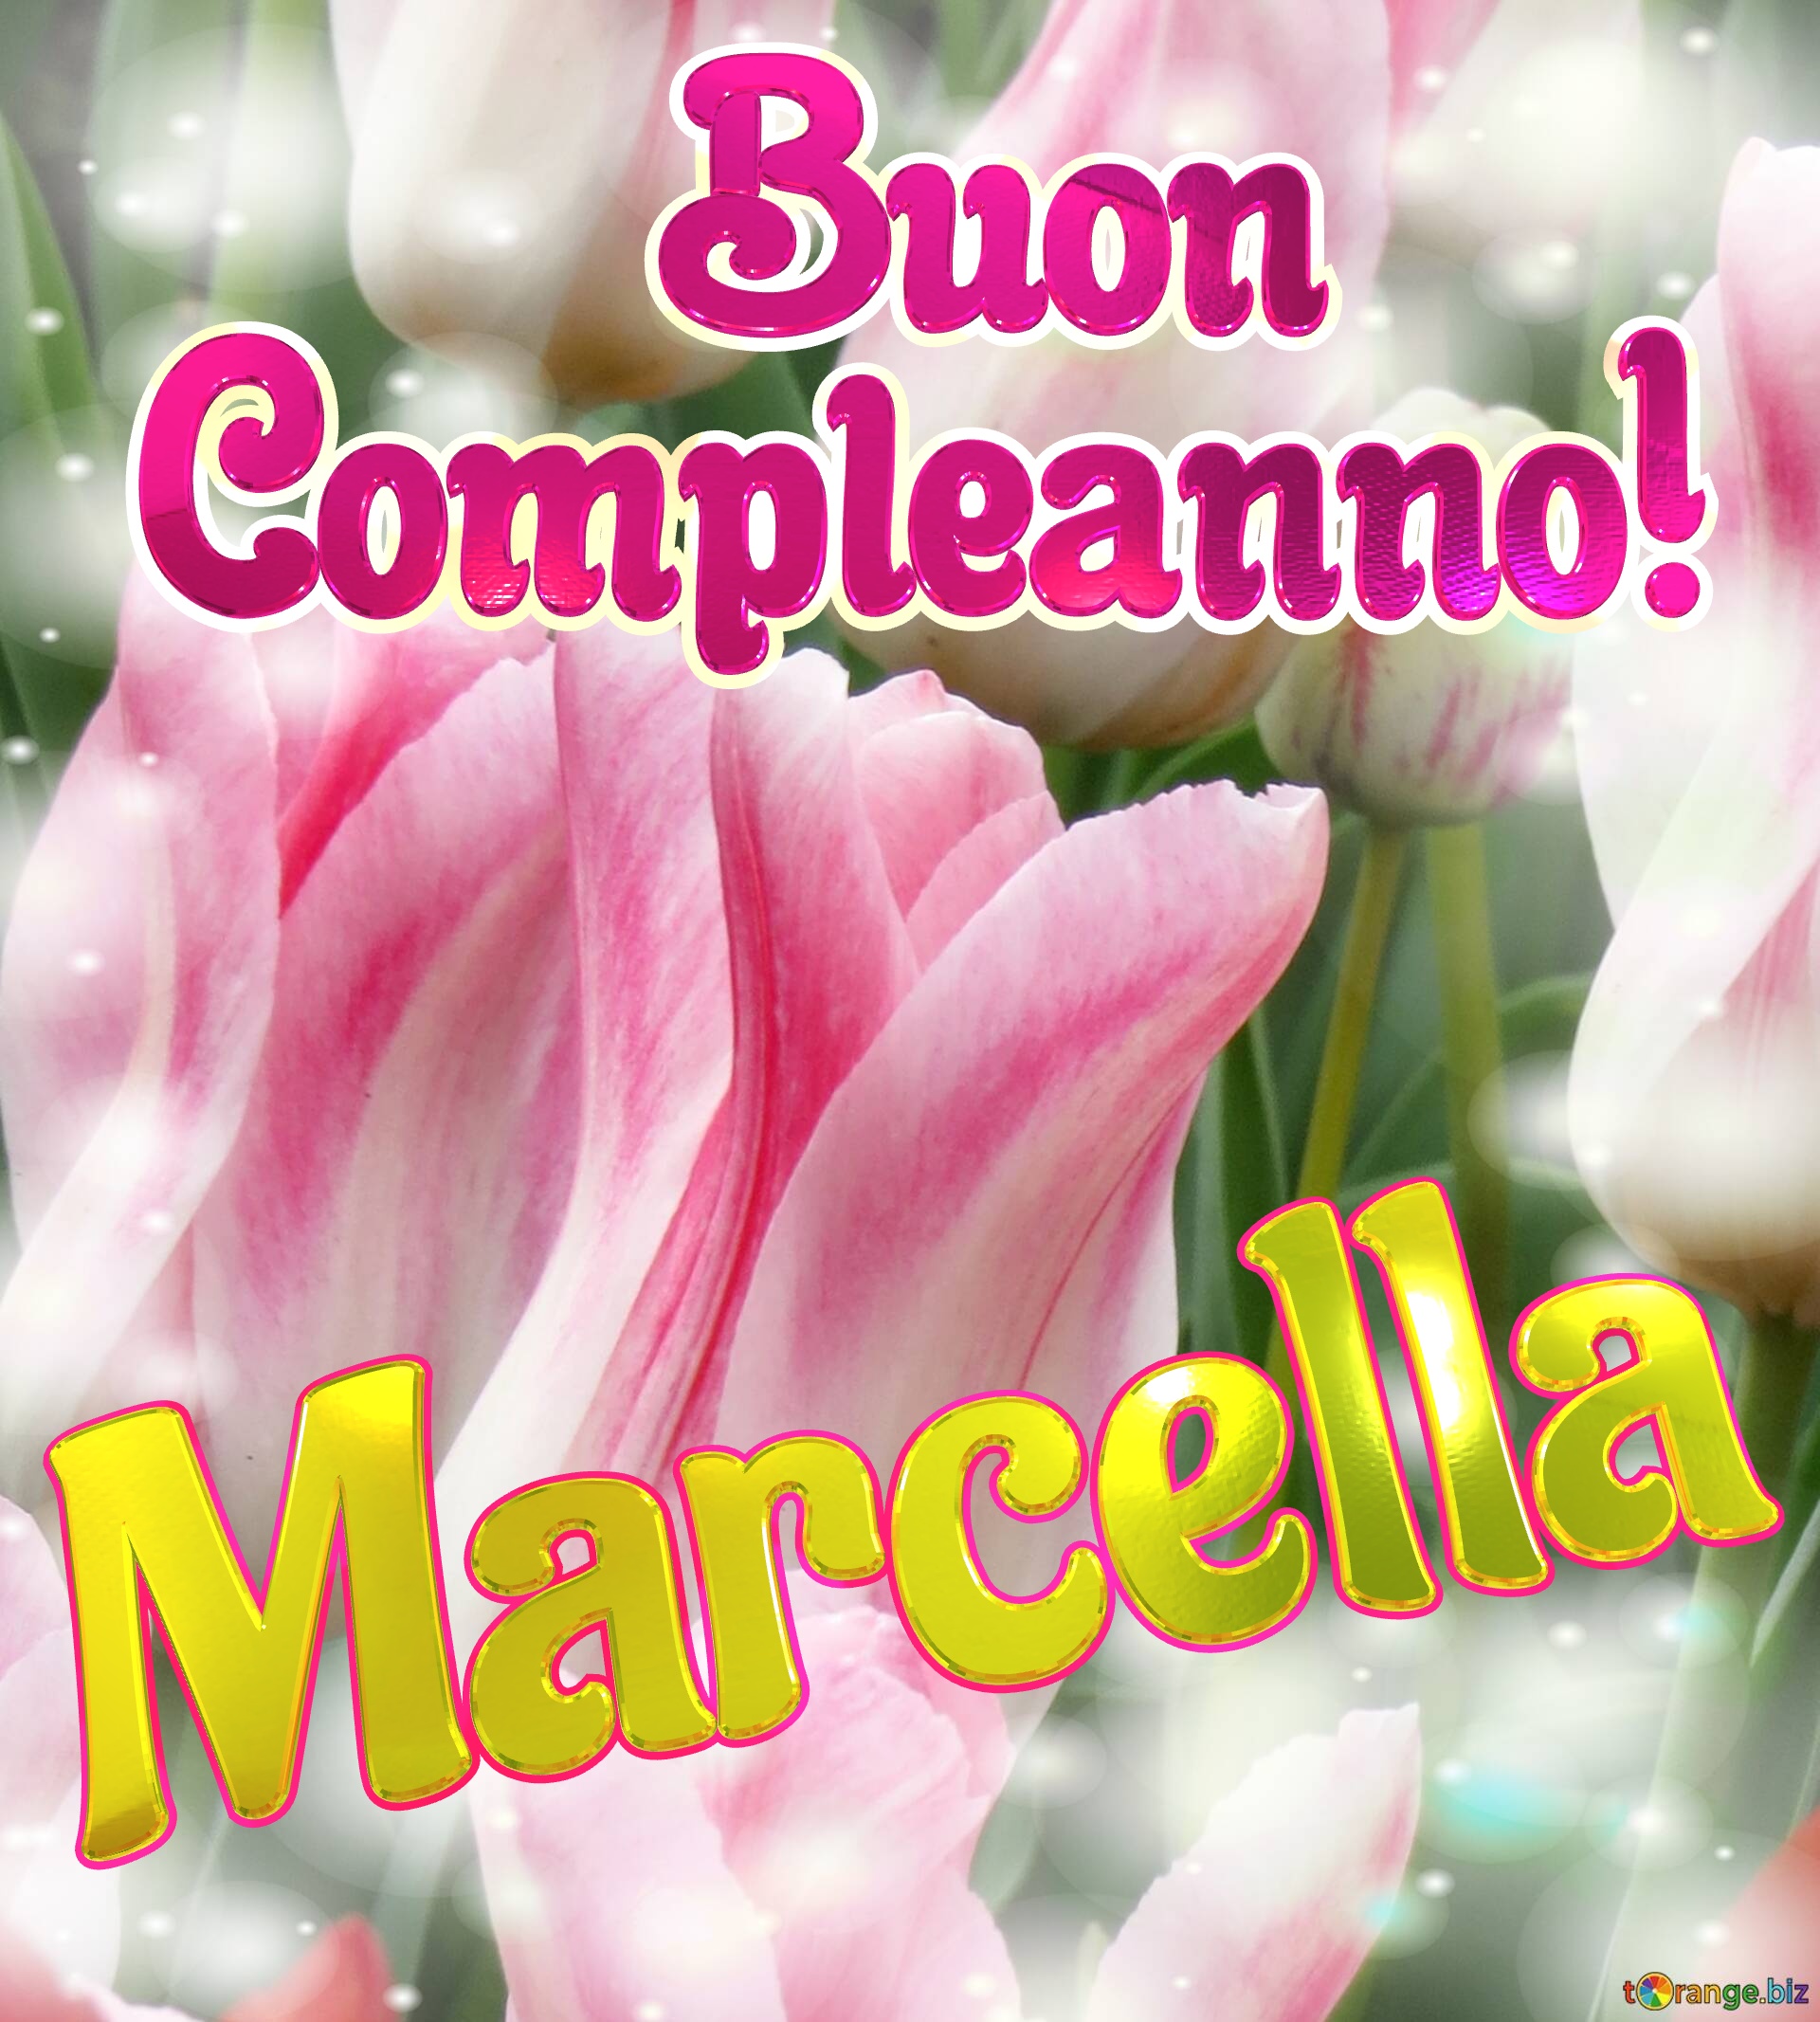       Buon  Compleanno! Marcella  La bellezza dei tulipani è un richiamo alla semplicità della vita, goditela al massimo. №0